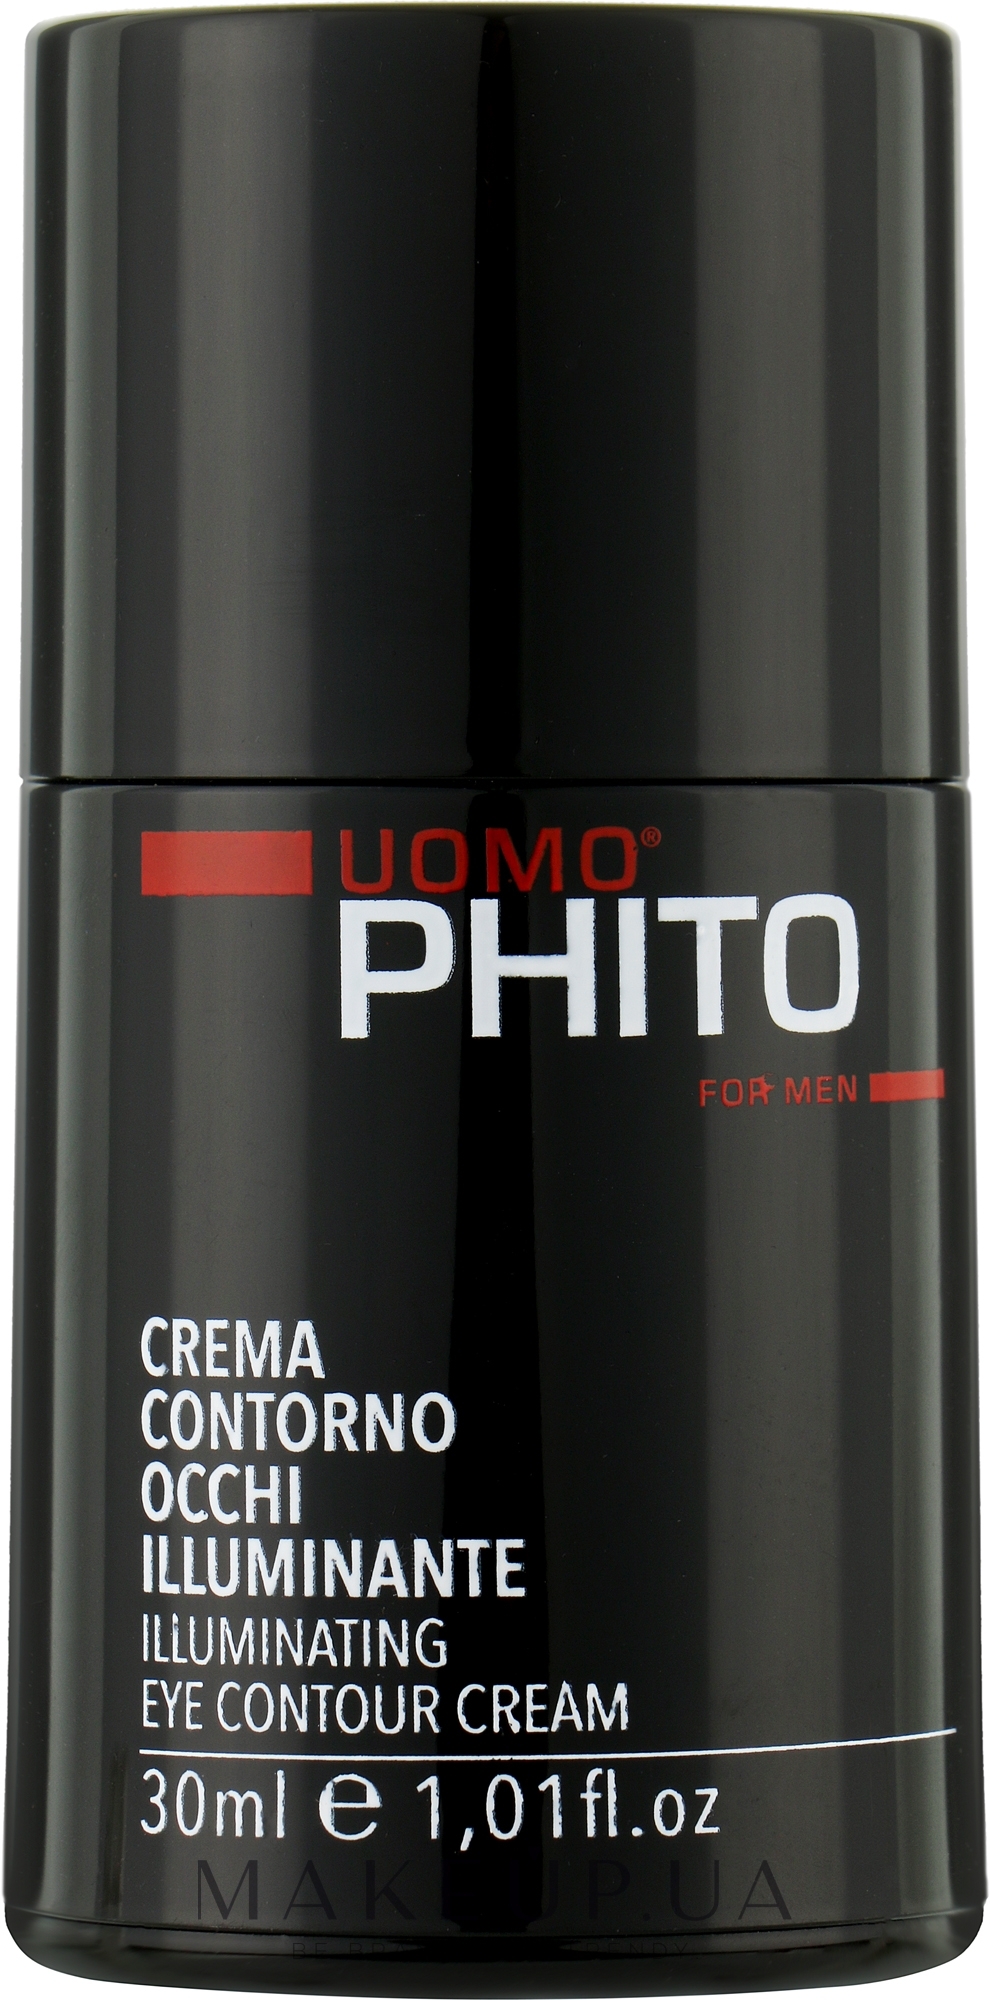 Підтягувальний крем для контуру очей, для чоловіків - Phito Uomo Illuminanting Eye Contour Cream — фото 30ml